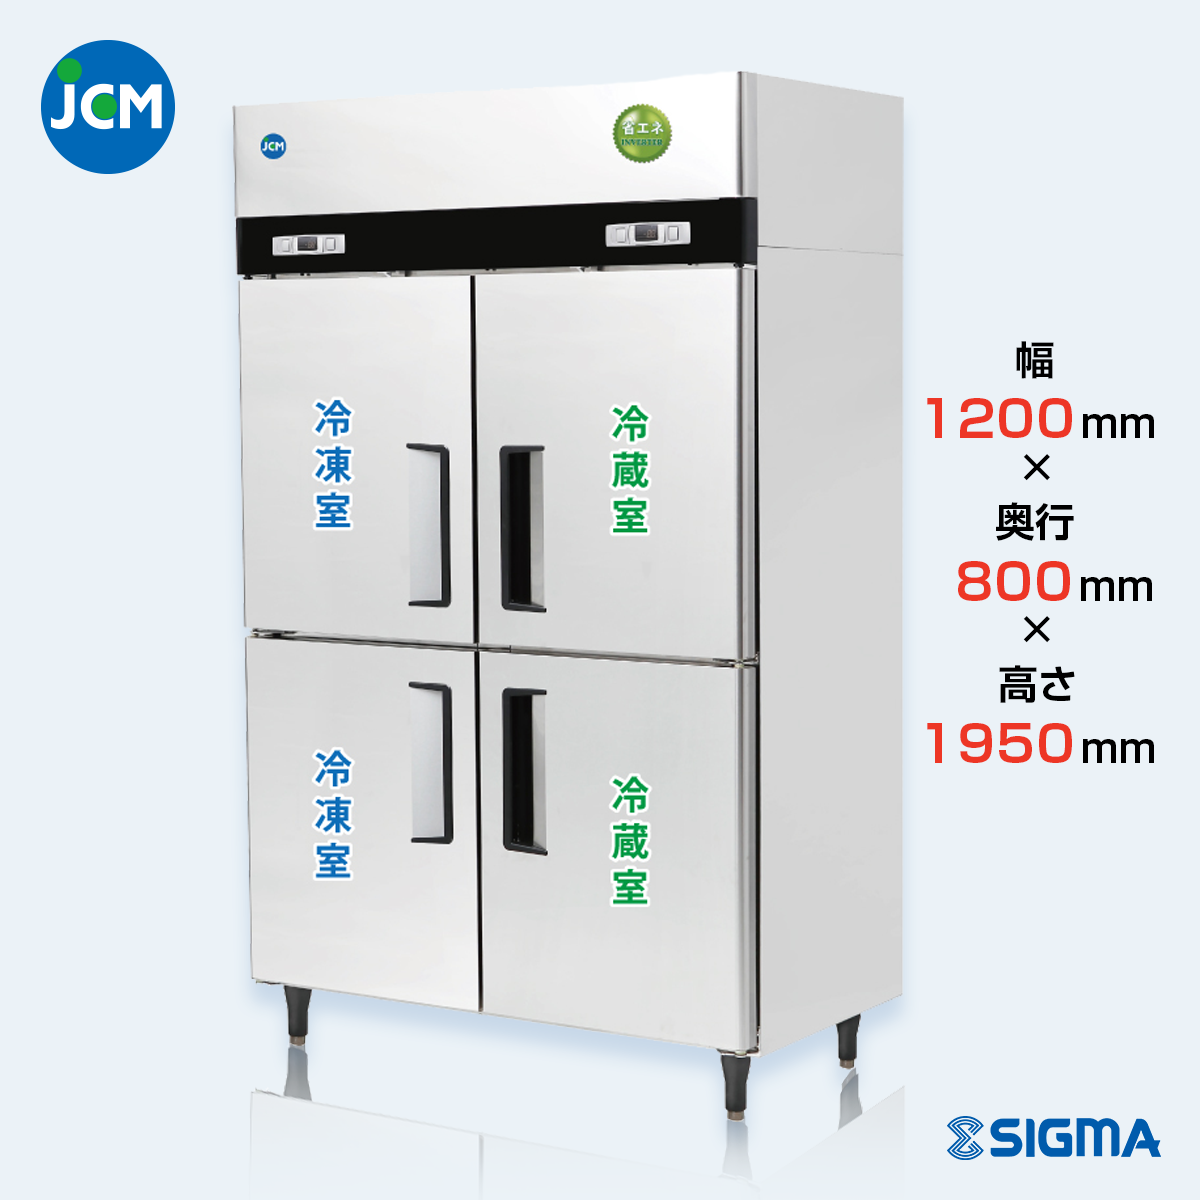 JCMR-1280F2-IN 業務用 縦型冷凍冷蔵庫（冷凍2 冷蔵2）／幅1200×奥行800×高さ1950mm